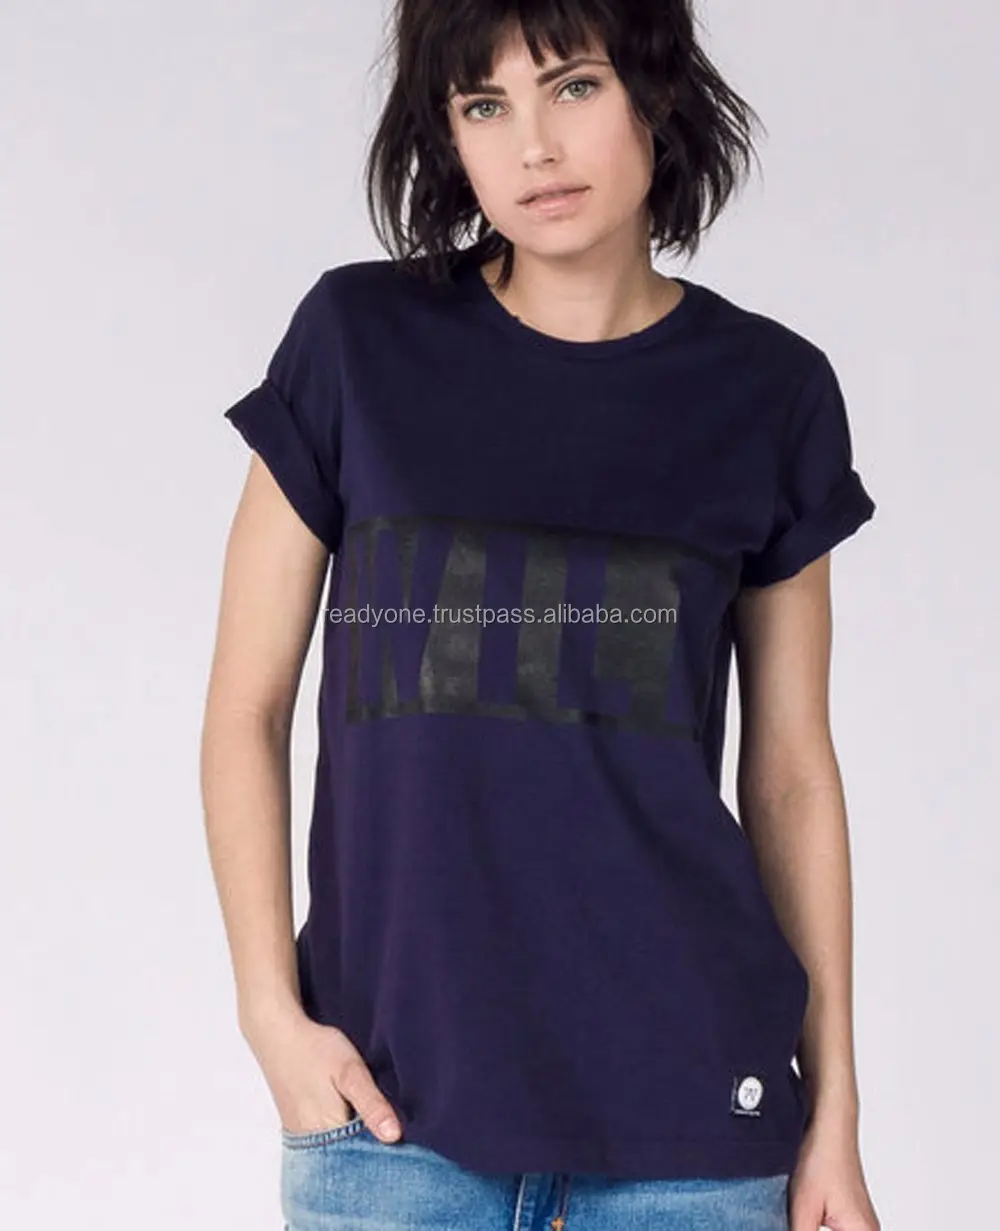 Made in thailand produkte 95% baumwolle 5% elasthan zwei farbe t shirt frauen mode kleidung großhandel